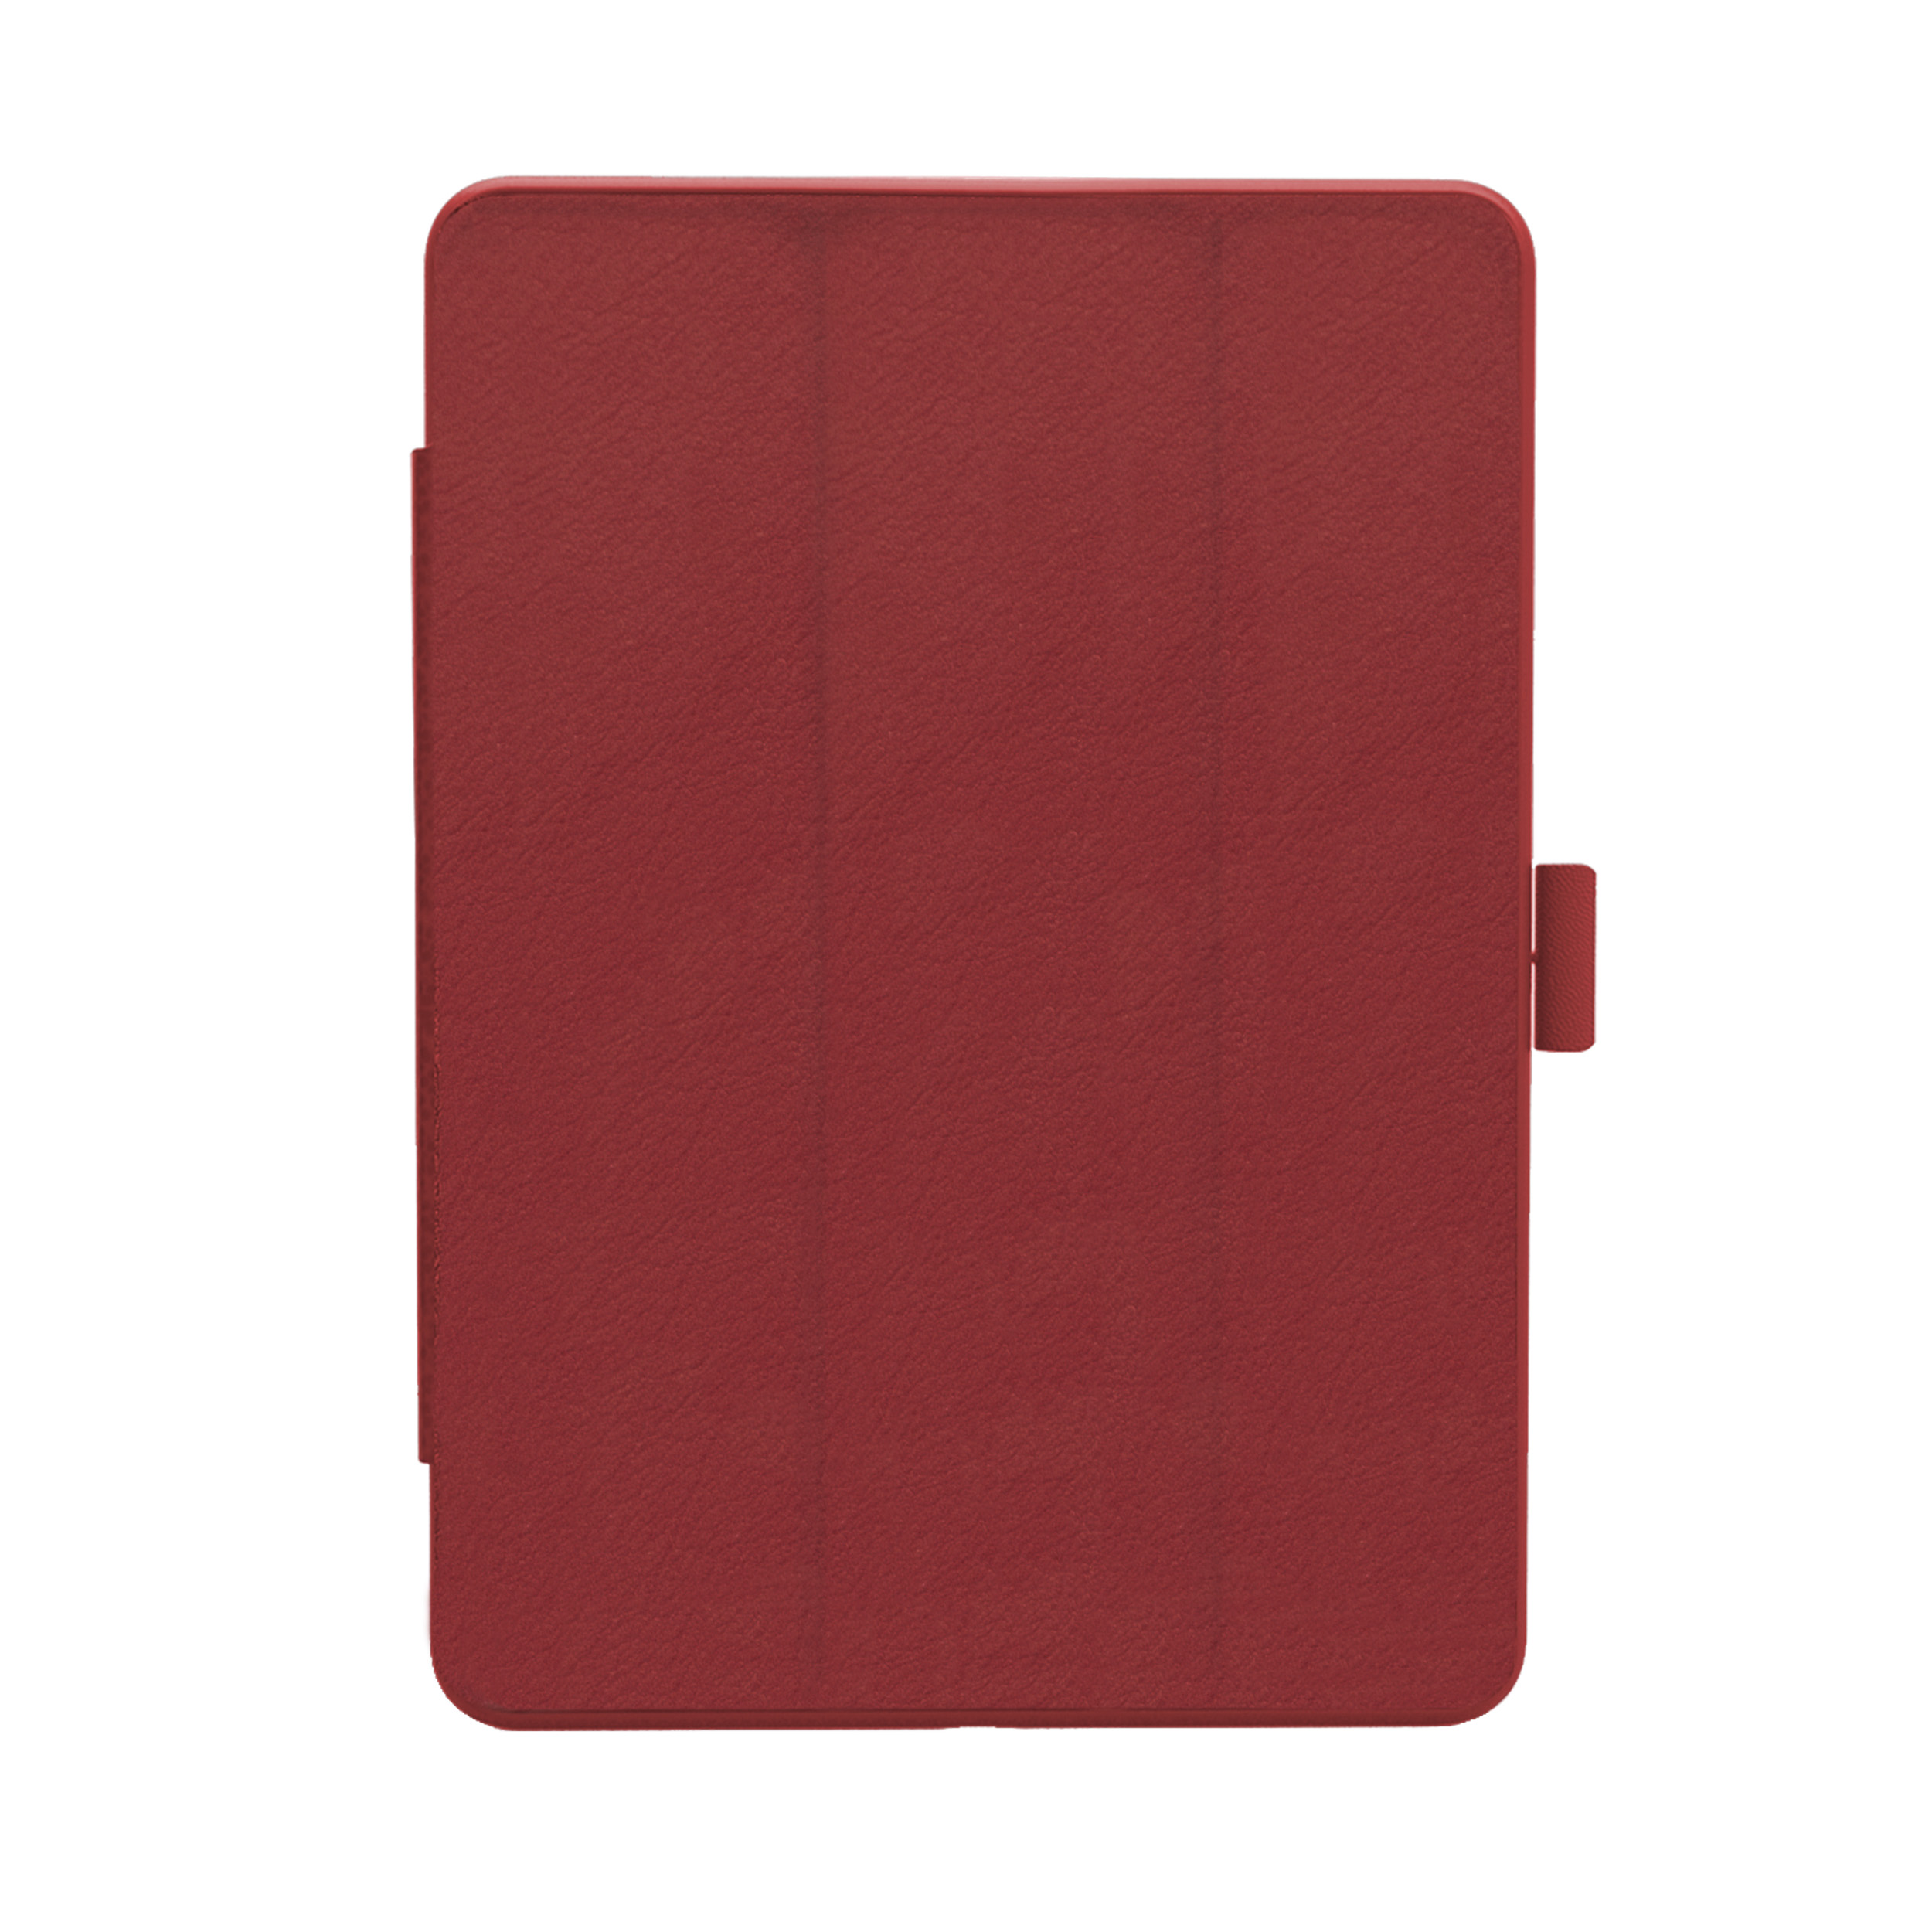 KMP Schutzhülle für iPad 9,7 PC, Apple für Mirkofaser, cherry red Silikon, Lederoptik, Backcover case Stiftfach Material Protective Cherry in Red mit biobasiertes